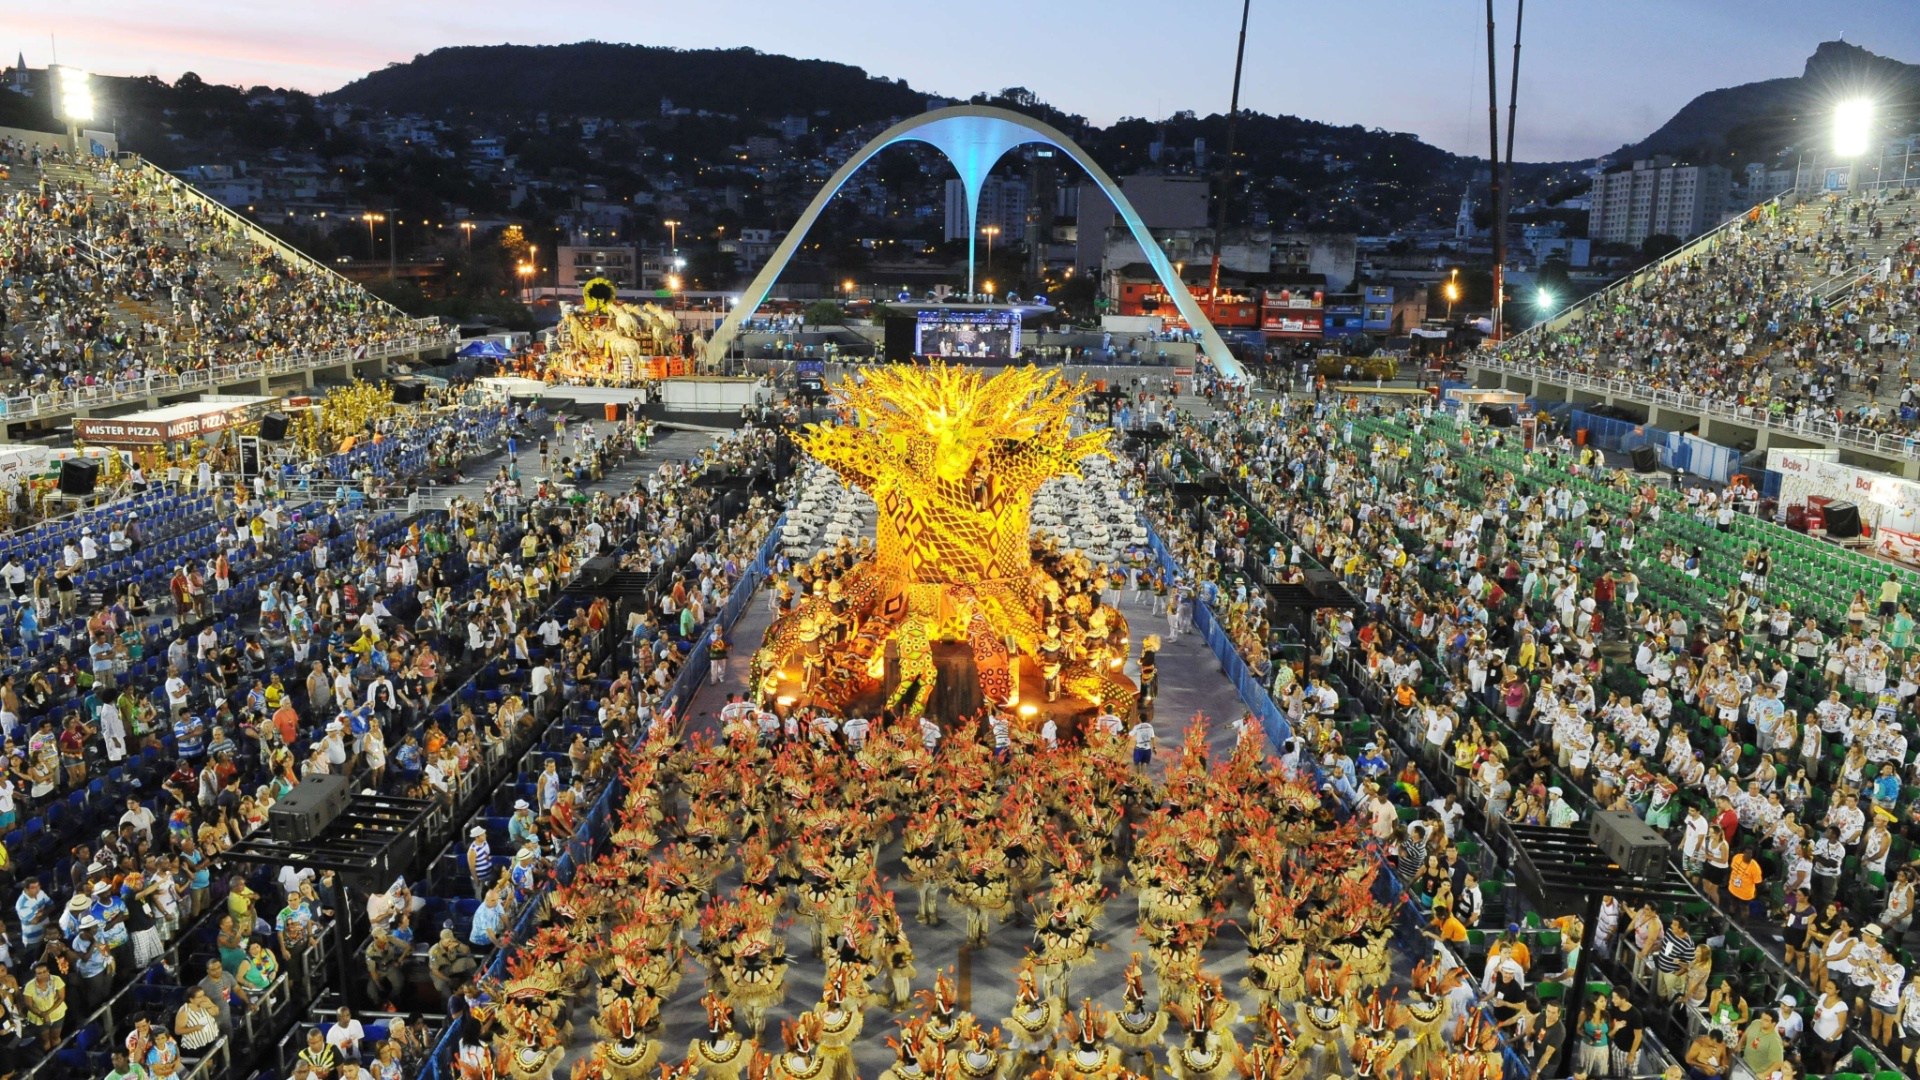 How to get to Rio de Janeiro Carnival Sambadrome